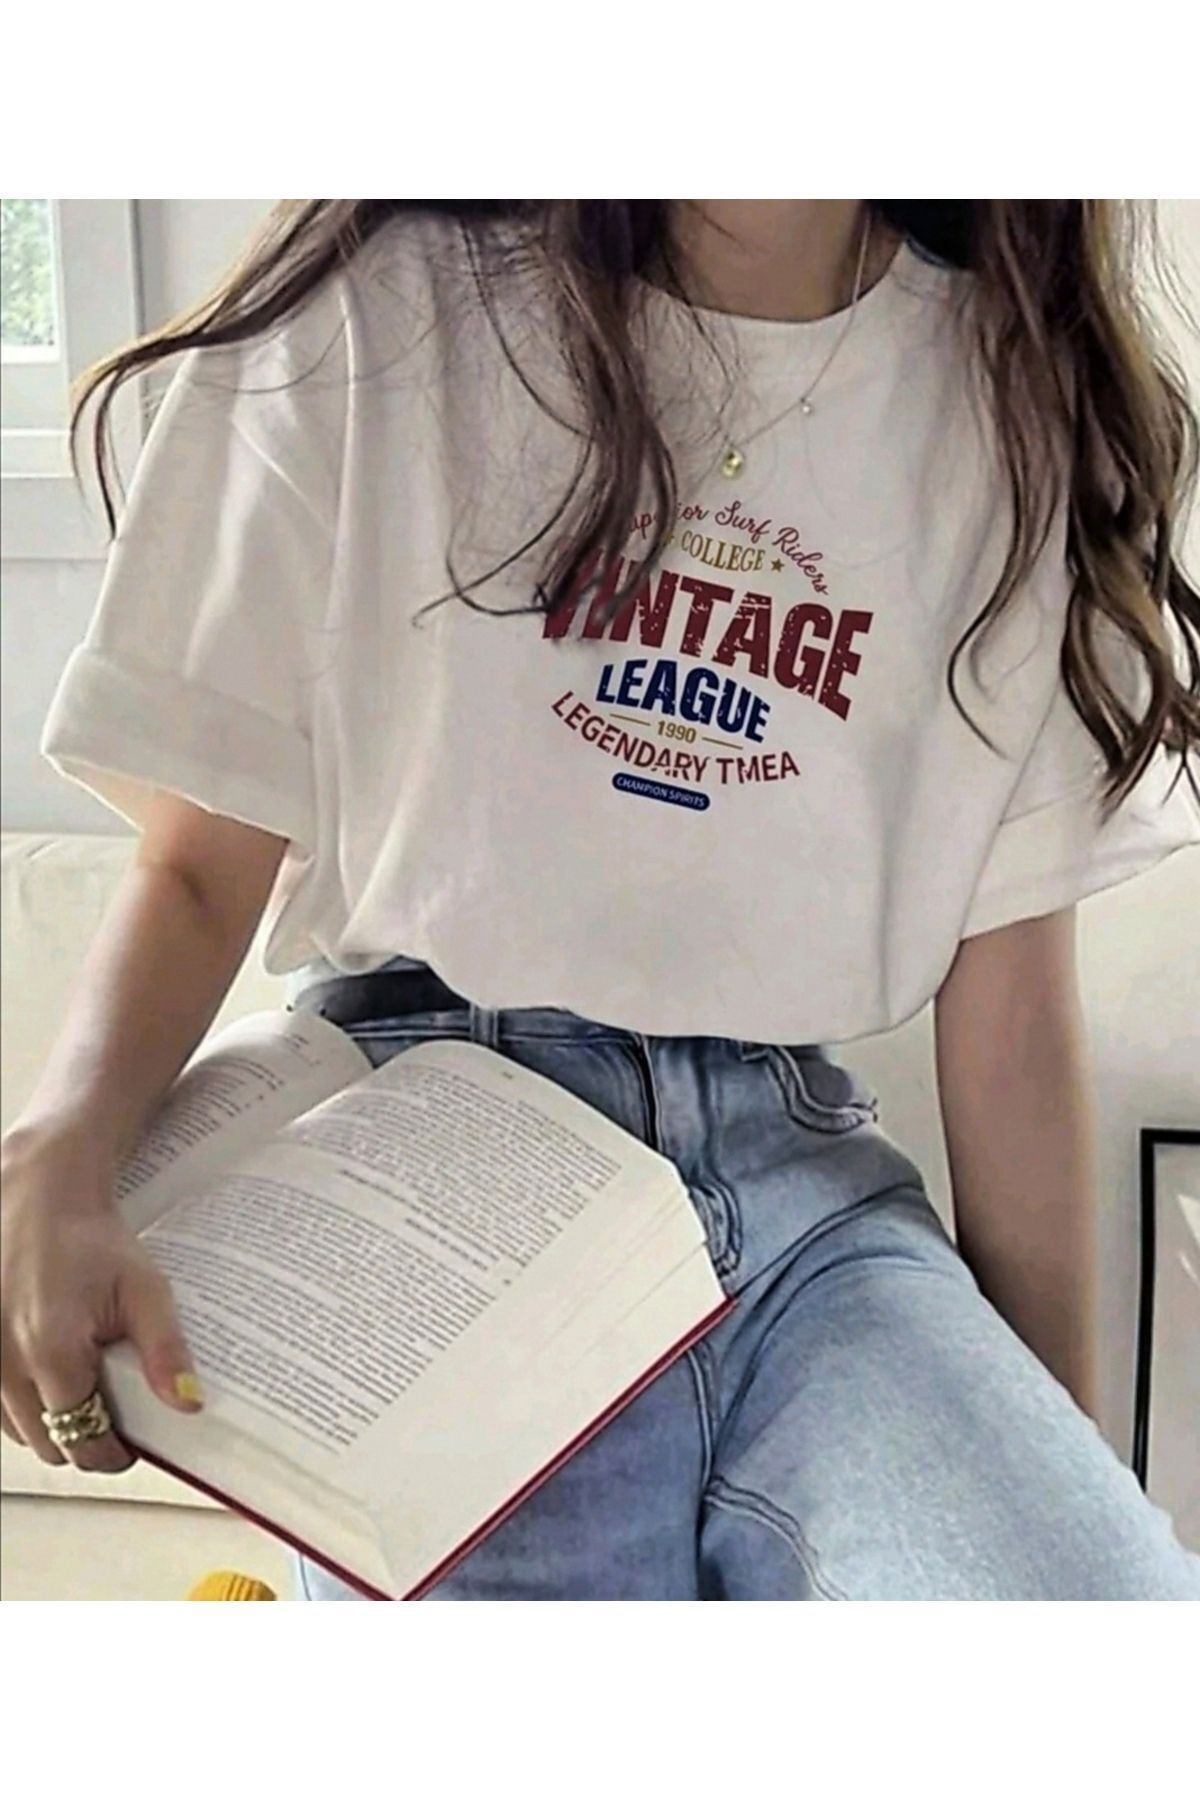 astrophe Beyaz Vintage League Baskılı T-shirt